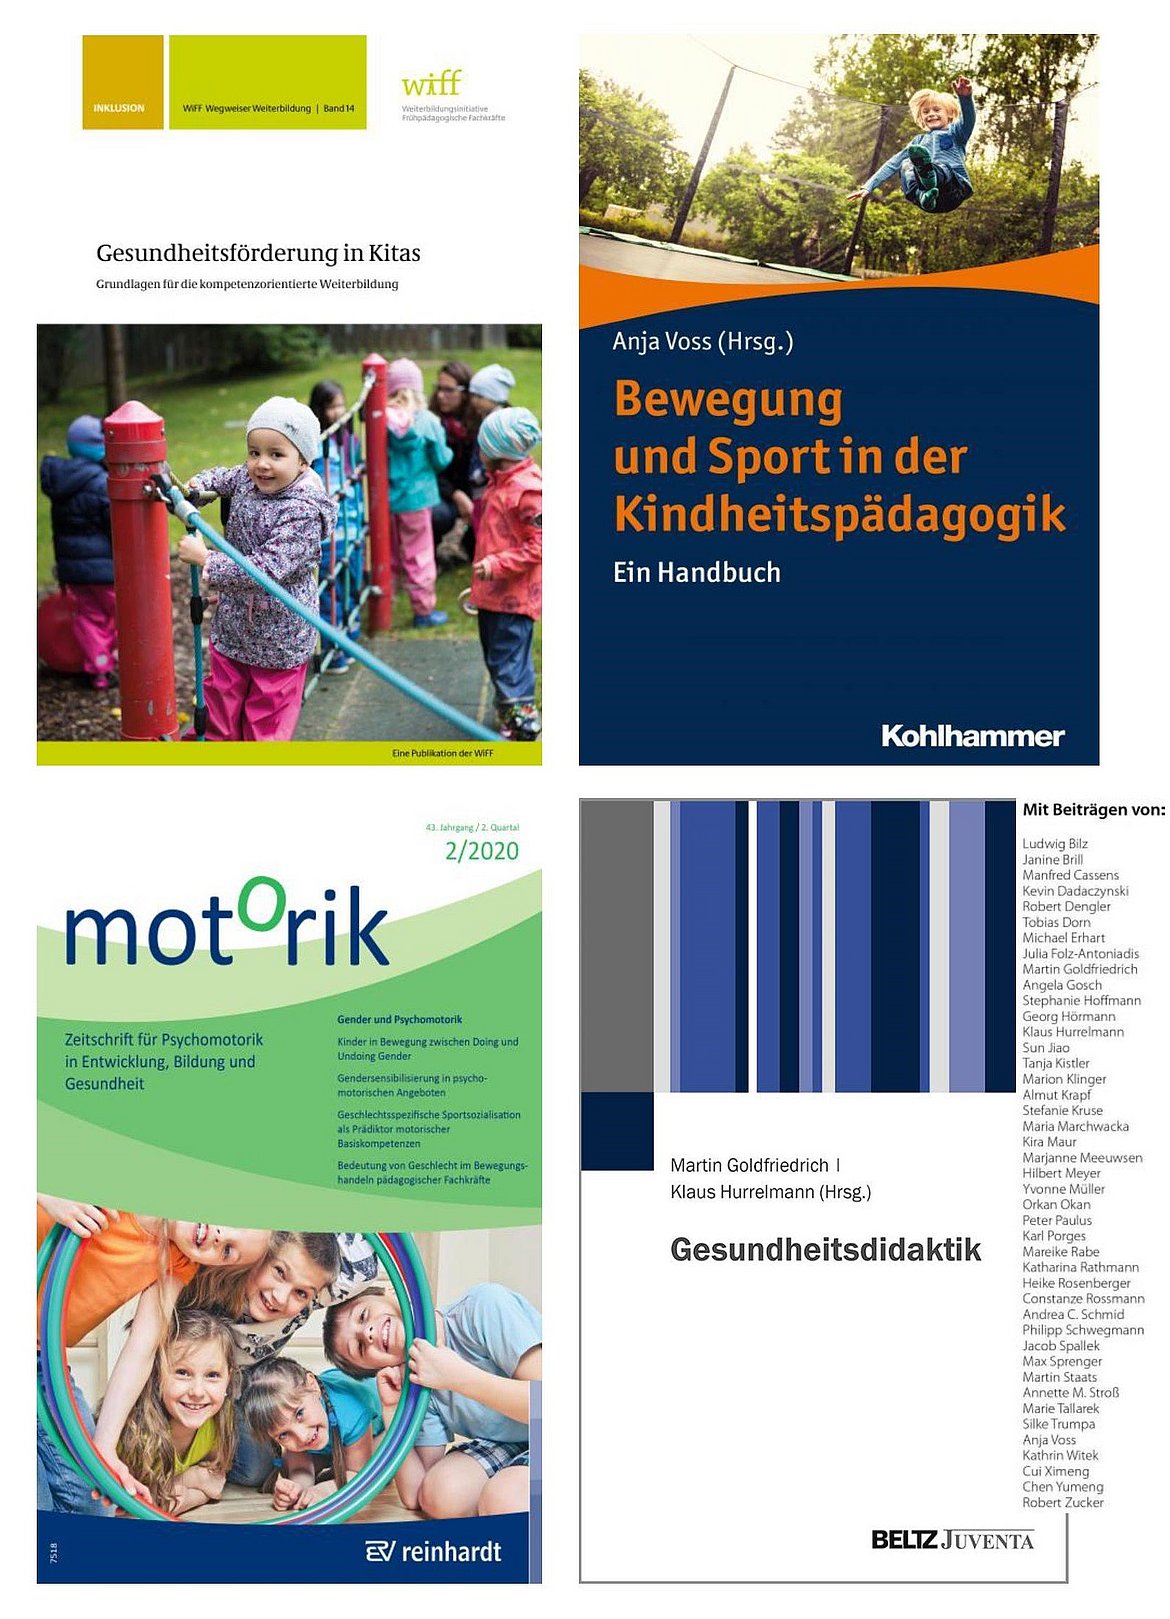 Vier Bücher-Cover. Von links nach rechts beschrieben: Gesundheitsförderung in Kitas, Bewegung und Sport in der Kindheitspädagogik, Motorik, Gesundheitsdidaktik.